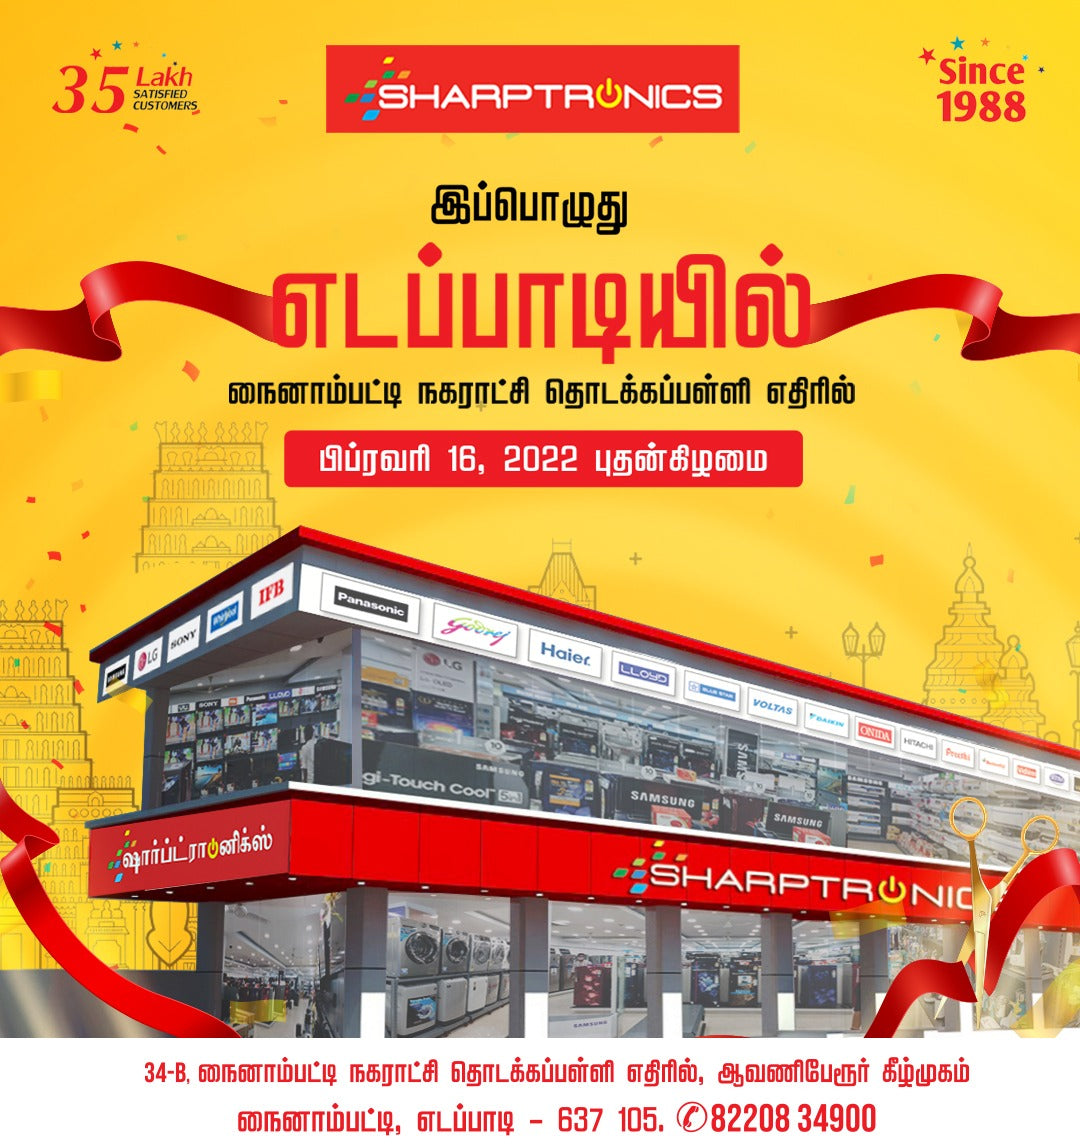 Sharptronics Idappady Opening 16/02/2022